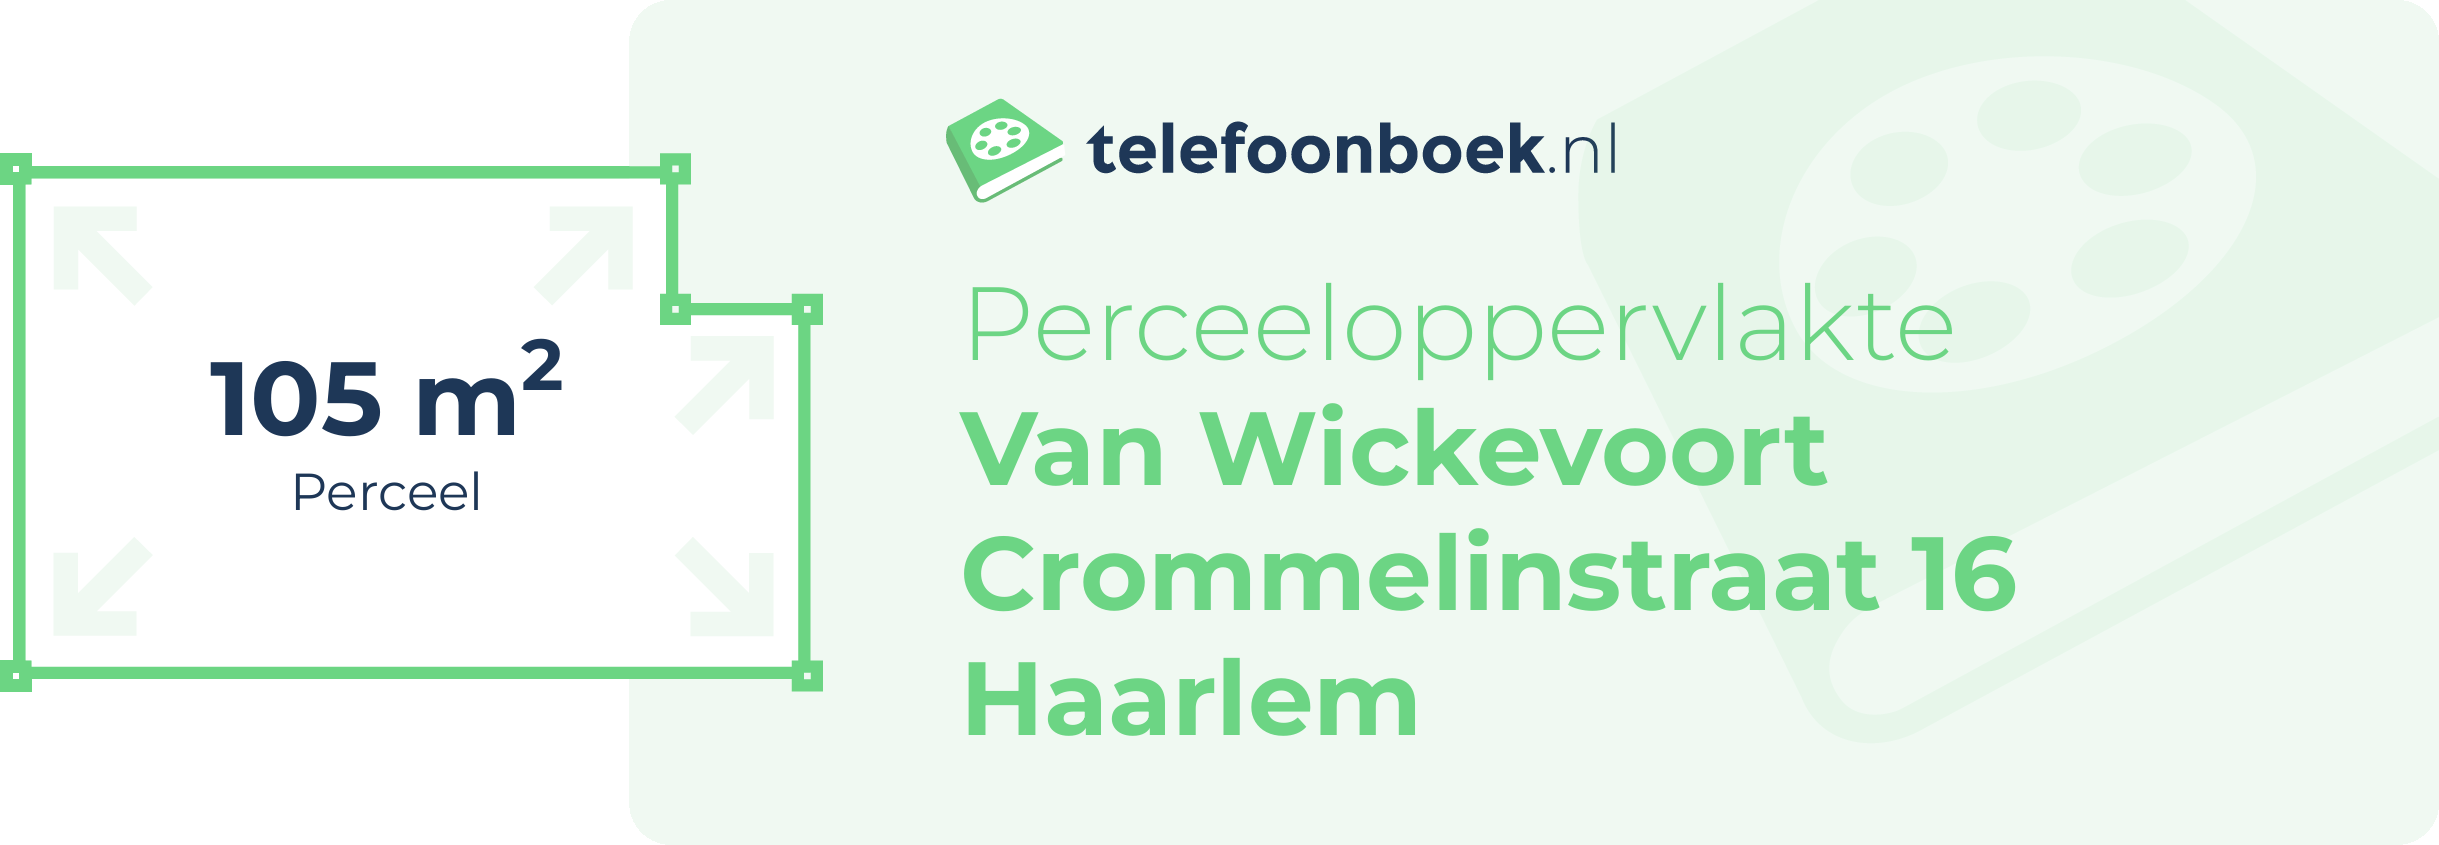 Perceeloppervlakte Van Wickevoort Crommelinstraat 16 Haarlem